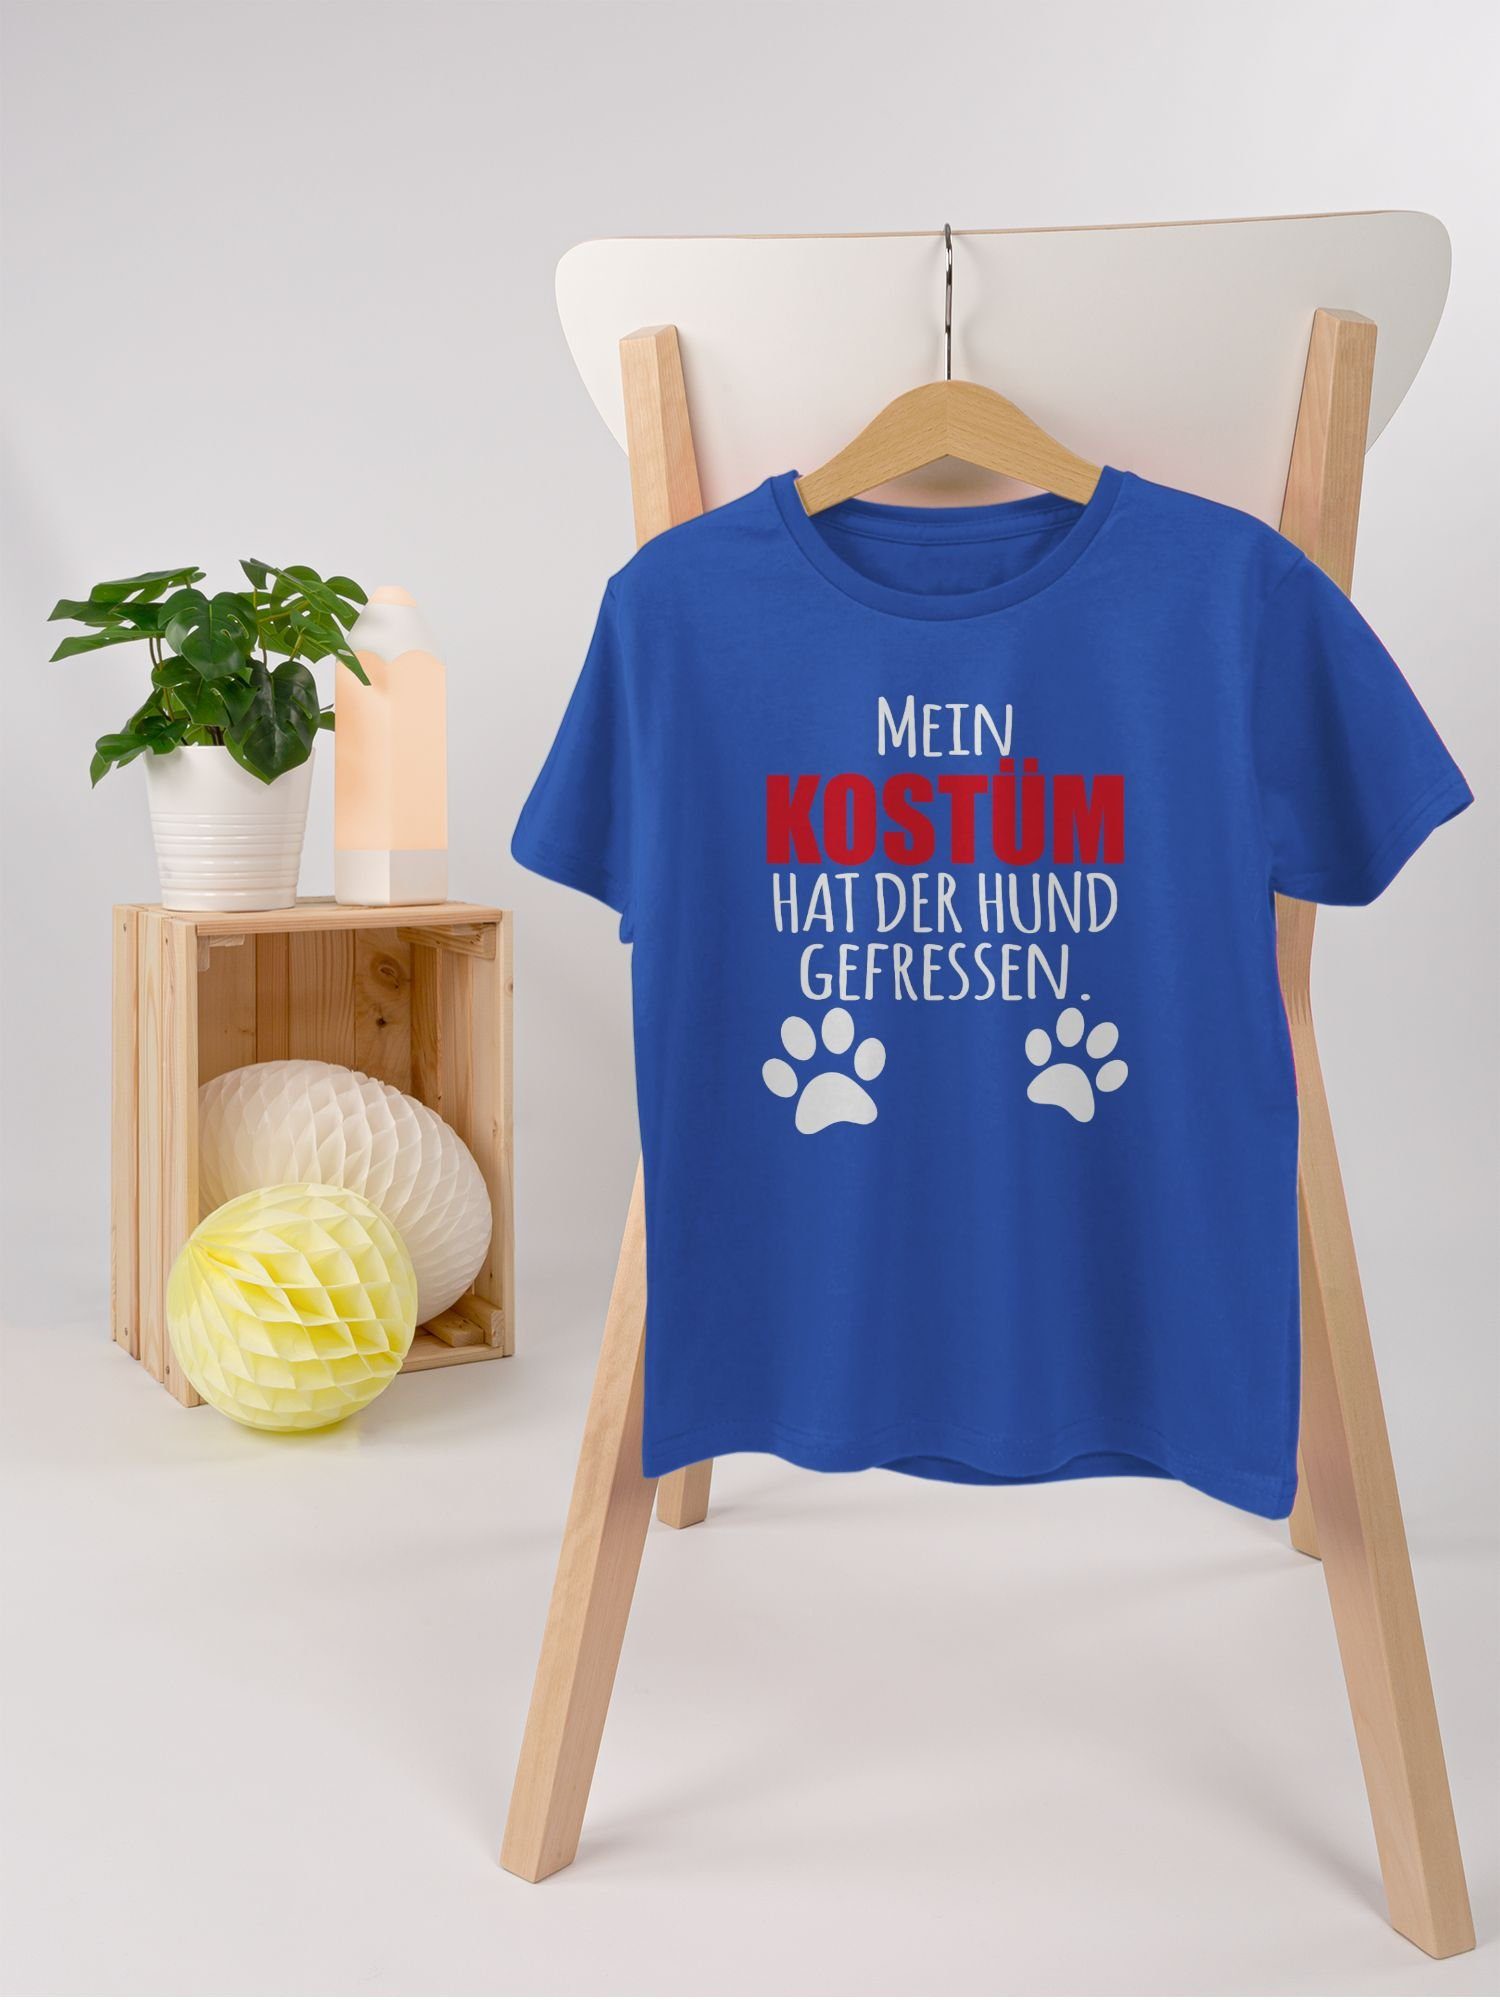 & Mein T-Shirt der Fasching 3 Dog gefressen - Hundekostüm hat Shirtracer Kostüm Hund Faschingskostüme Karneval Royalblau